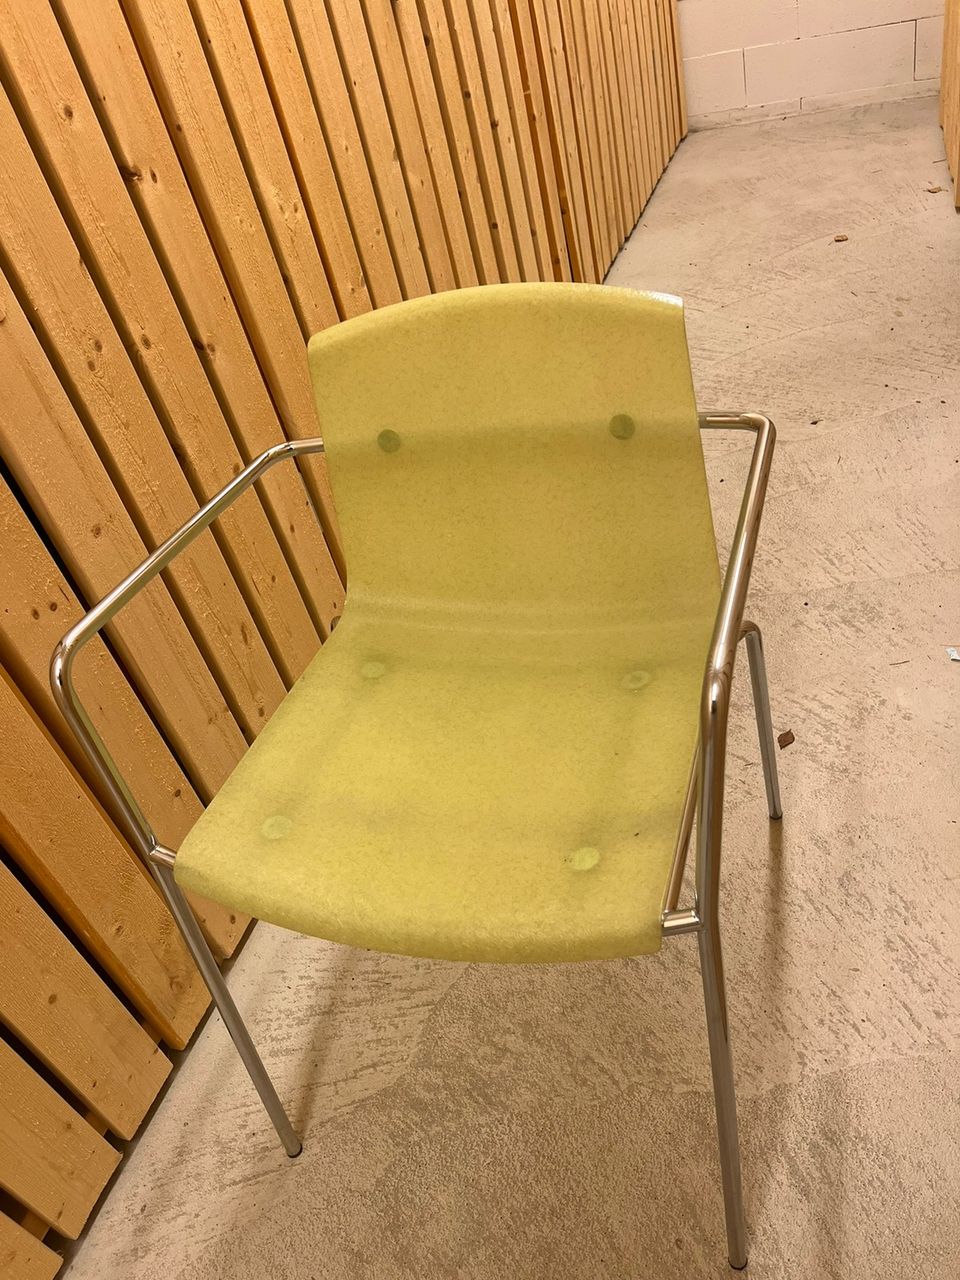 piiroinen flakes tuoleja